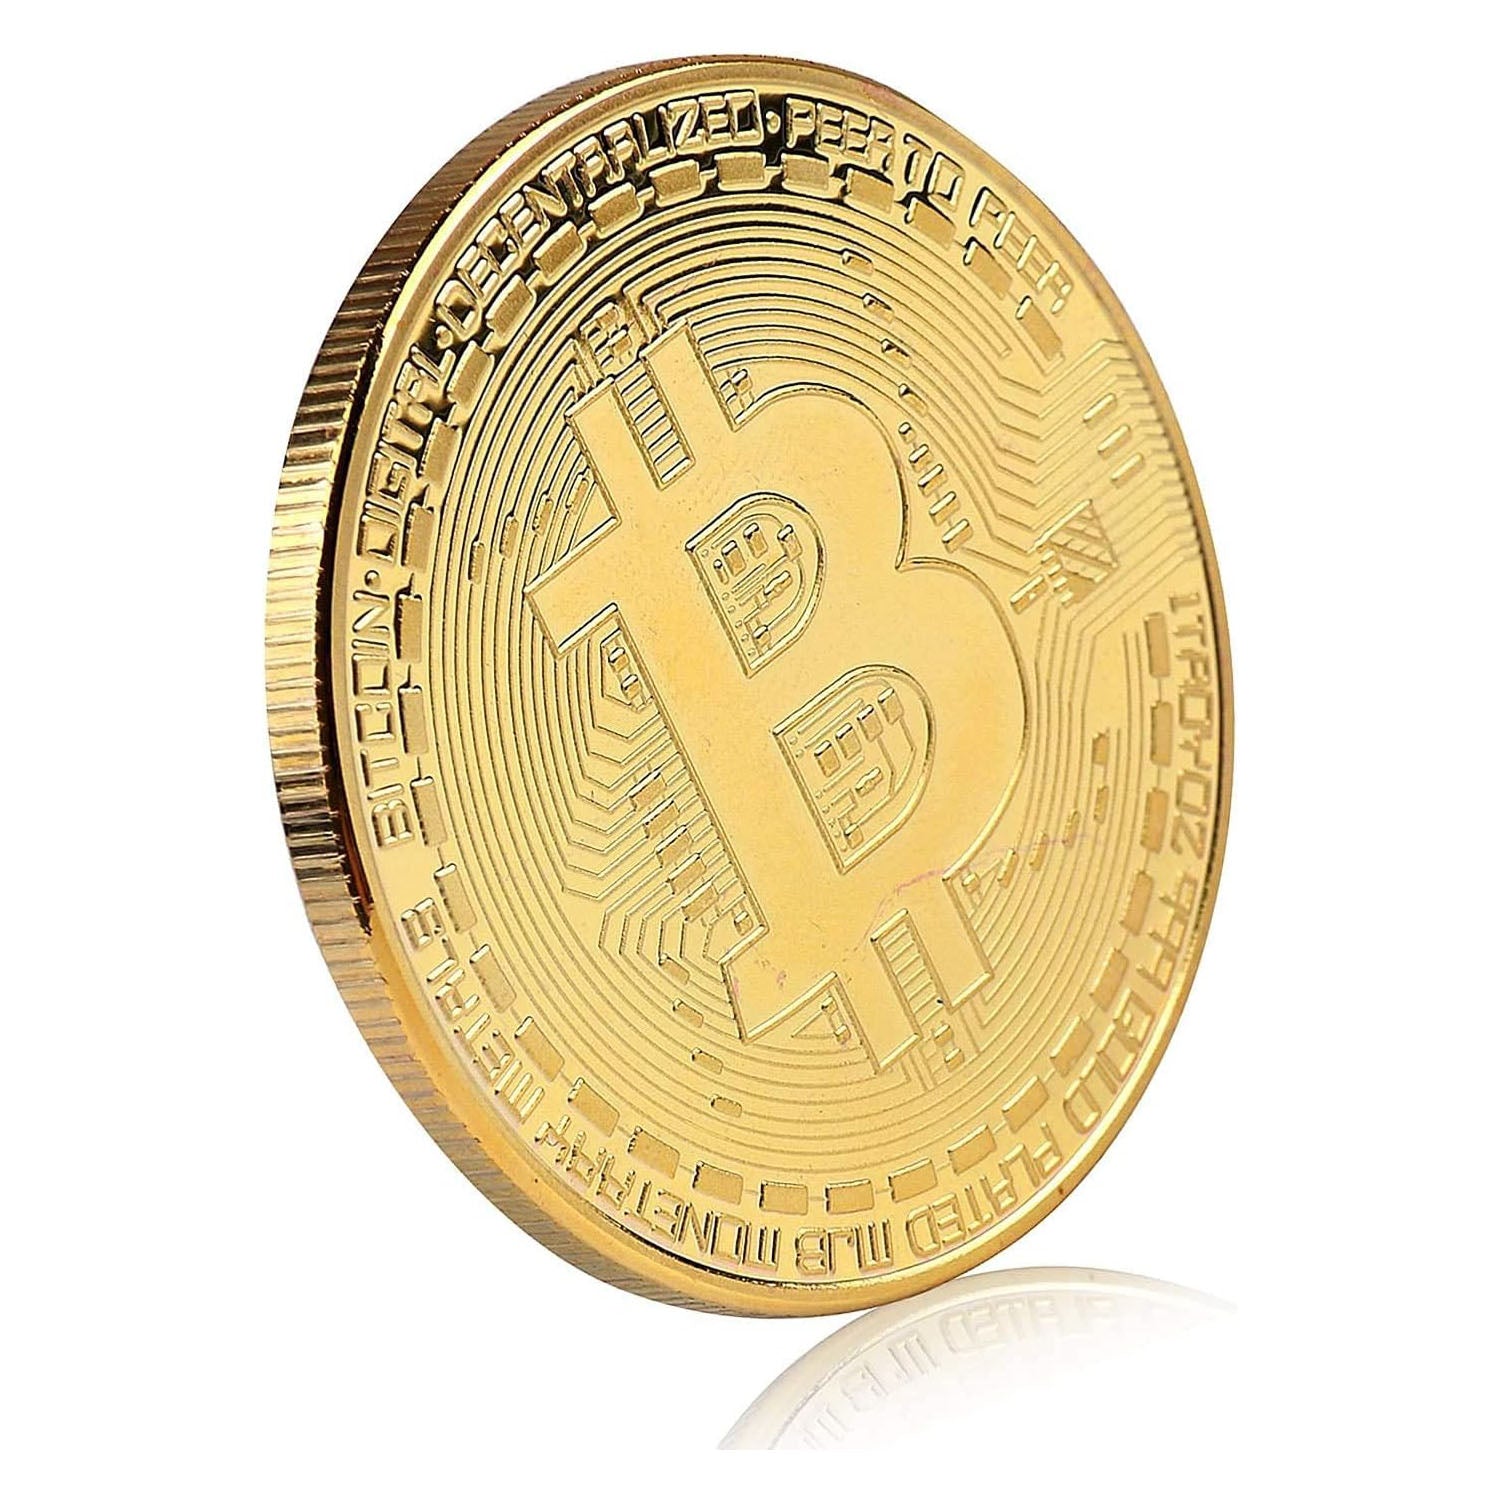 Bitcoin Souvenair Coin - Gear Up ZA